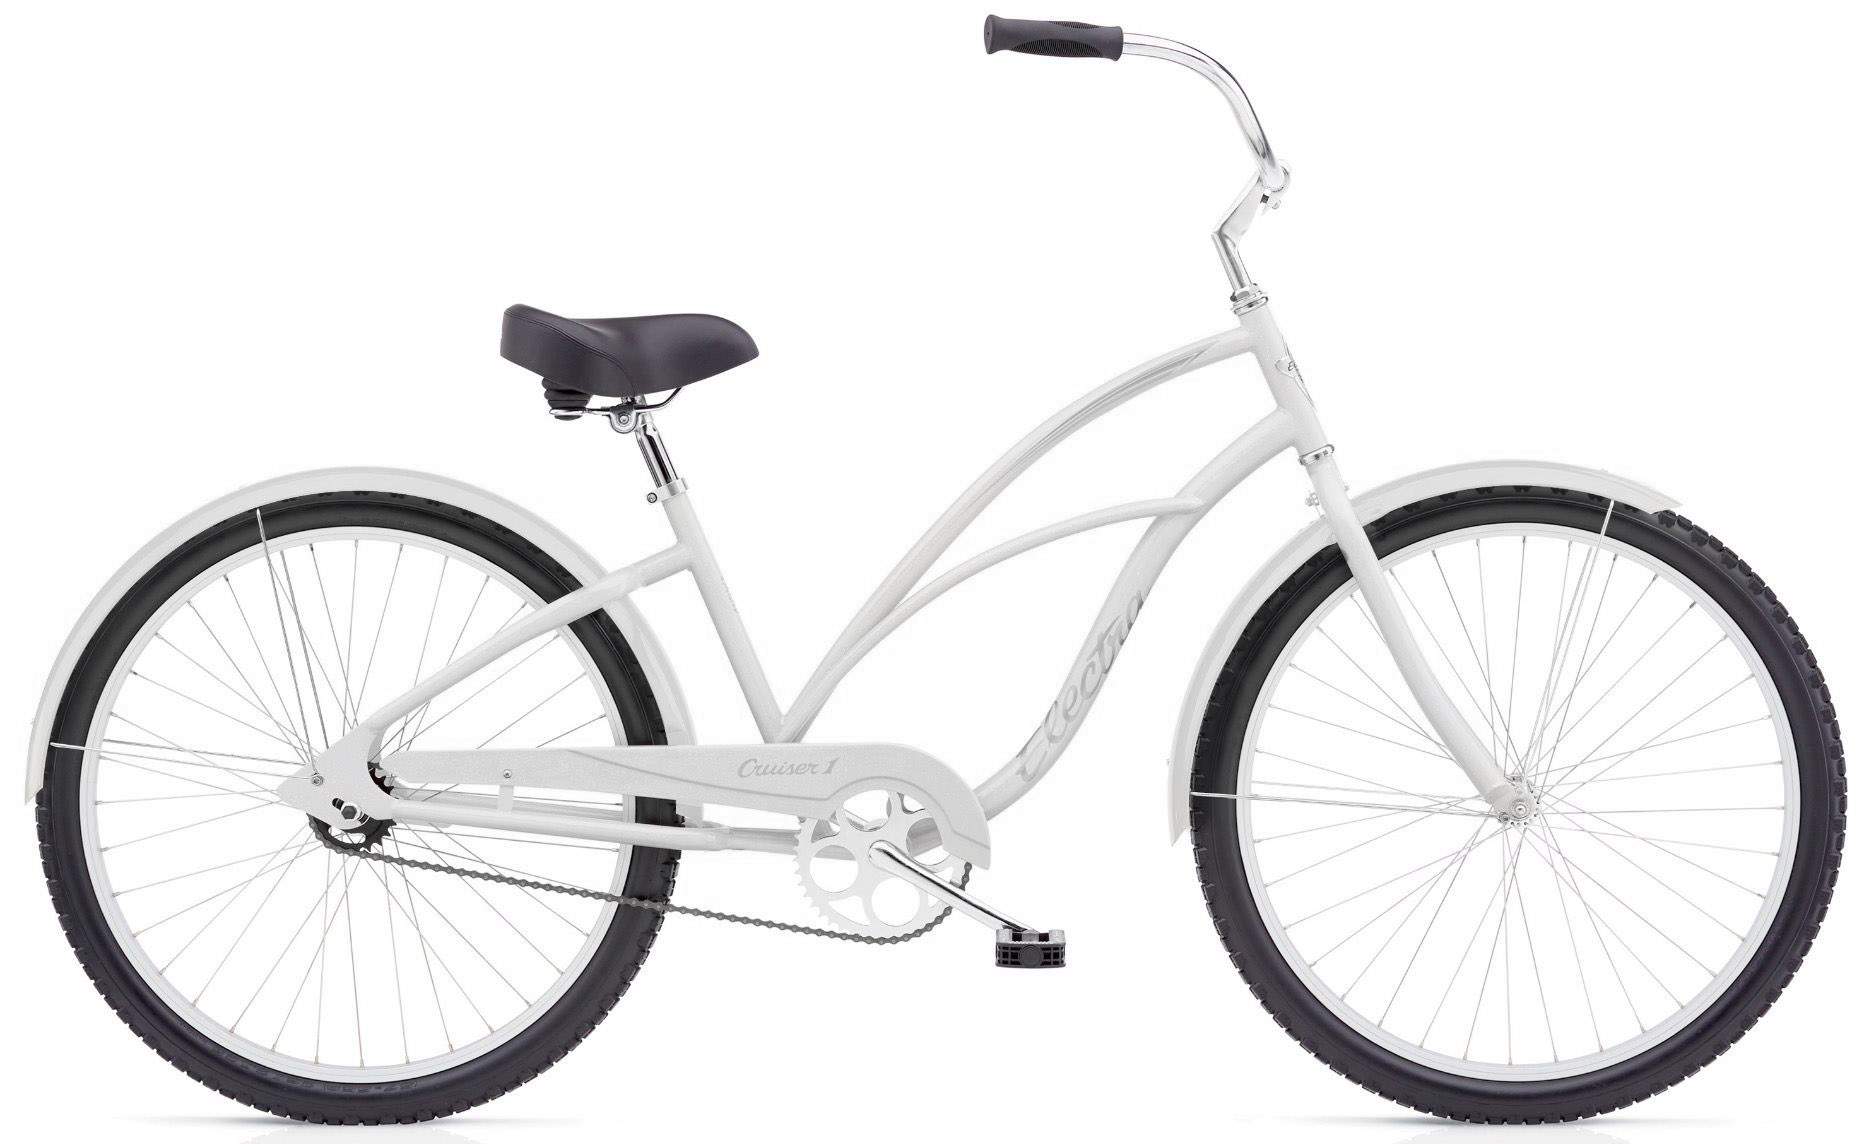  Велосипед Electra Cruiser 1 Ladies 2020